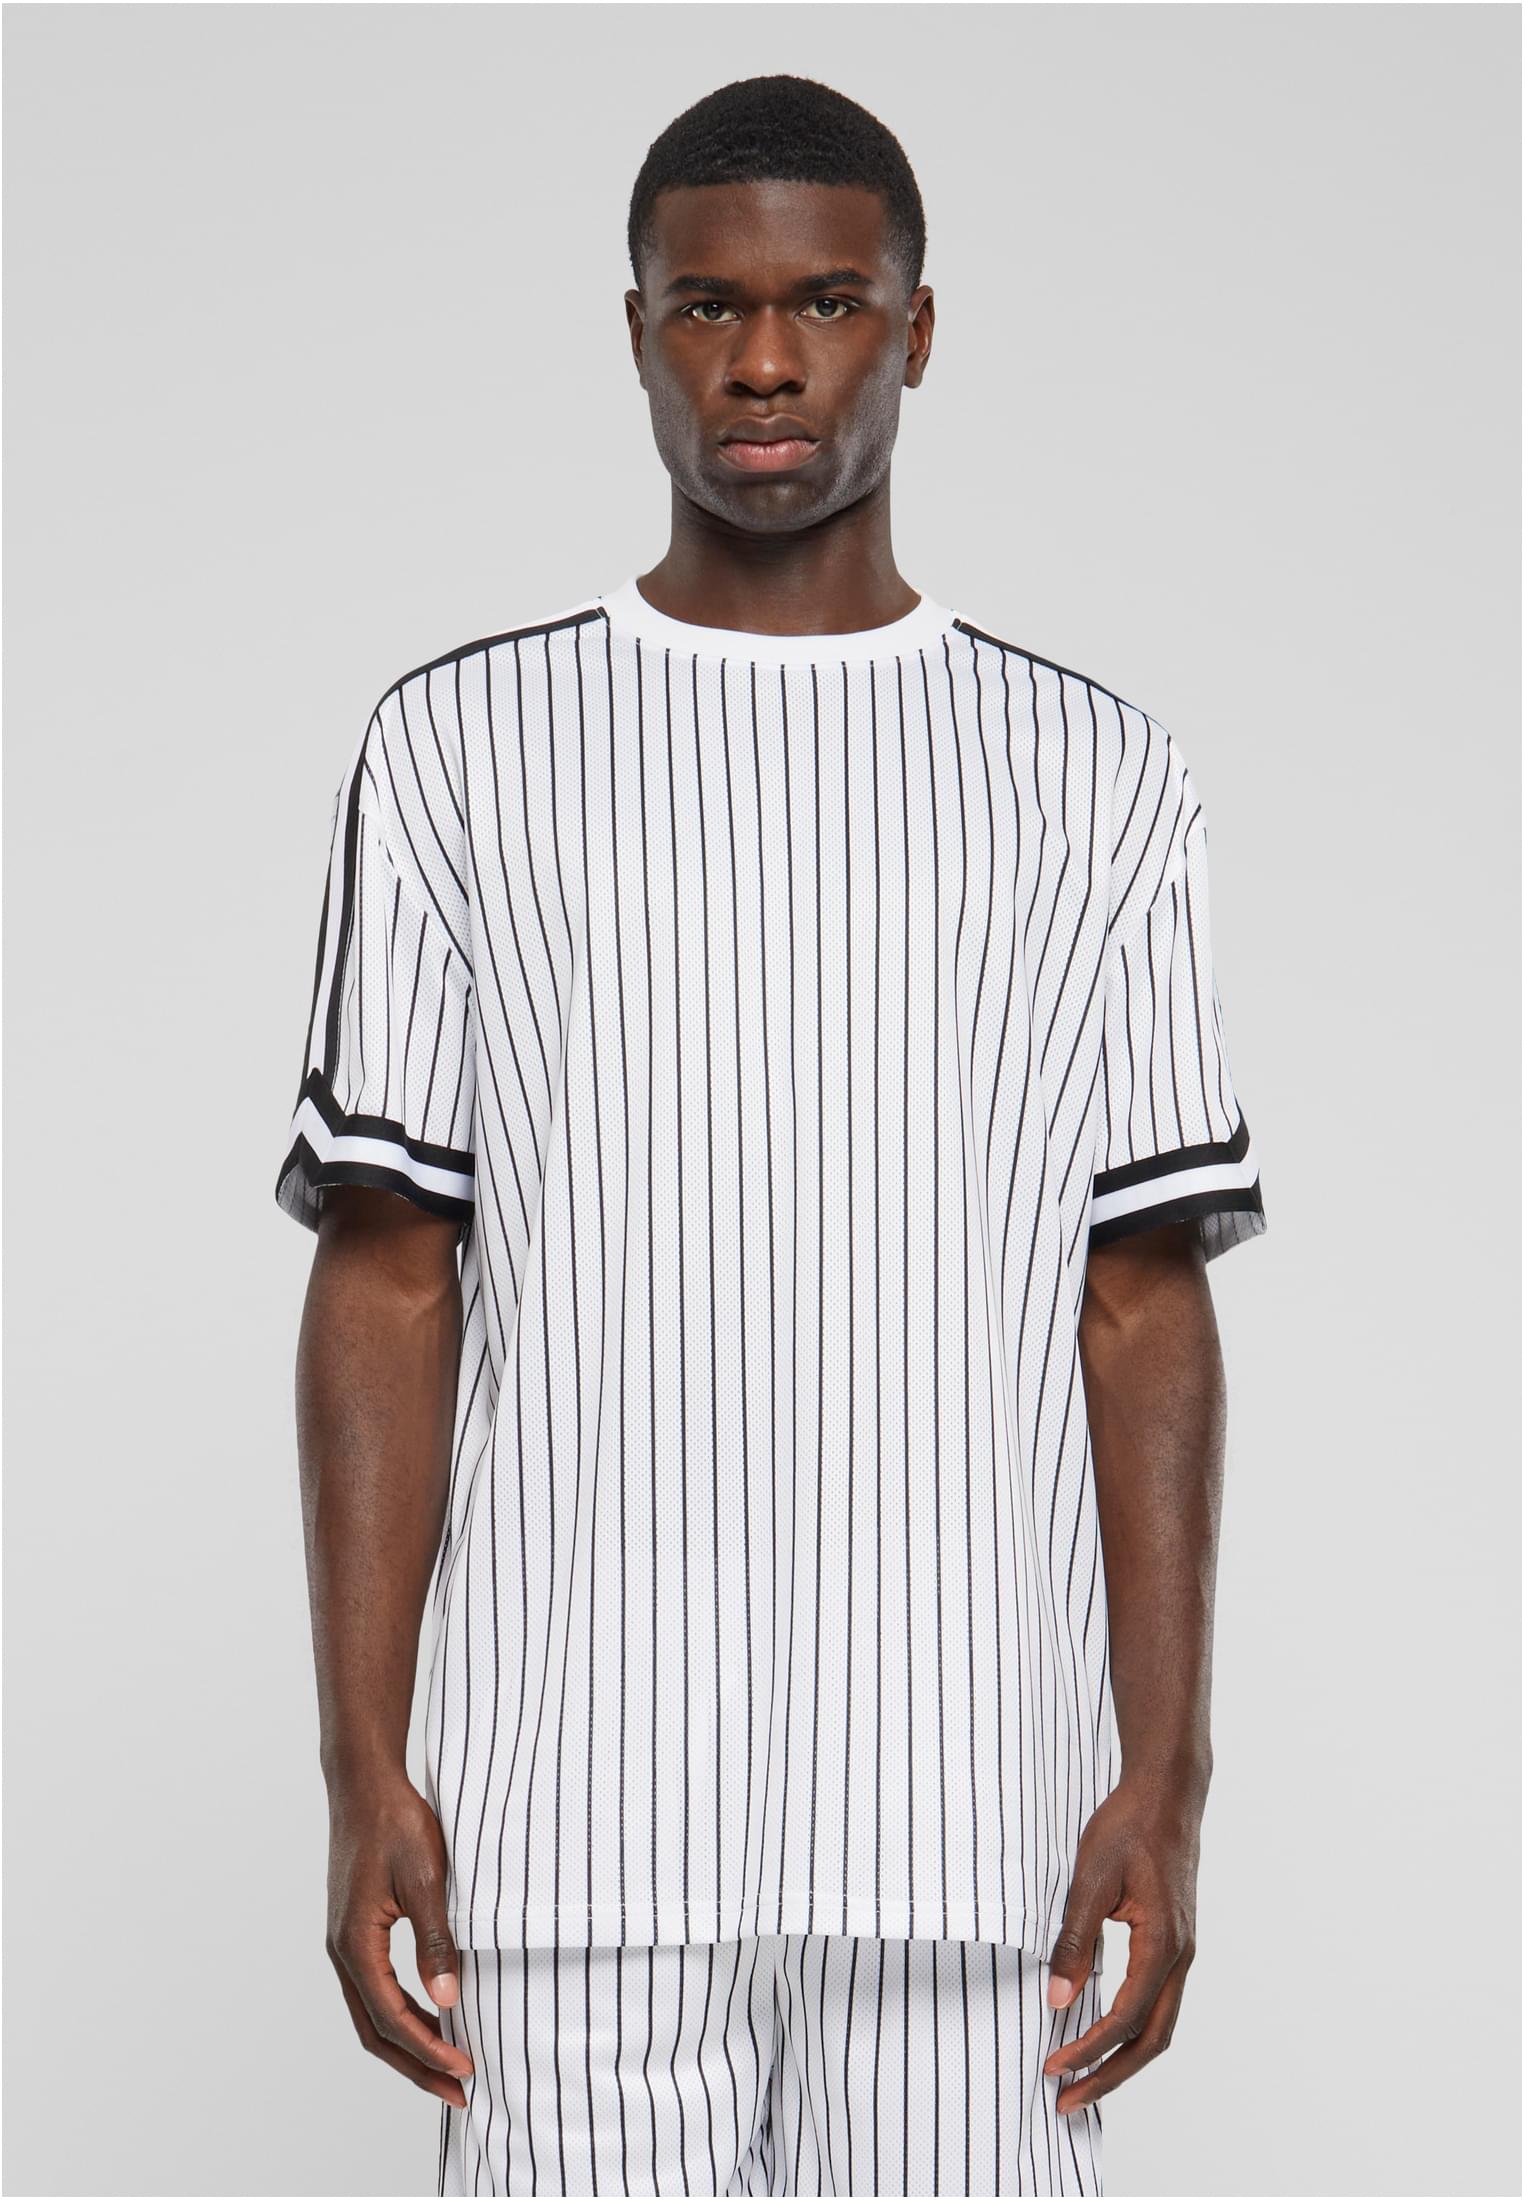 Men's Oversized Striped Mesh Tee T-Shirt - white/black